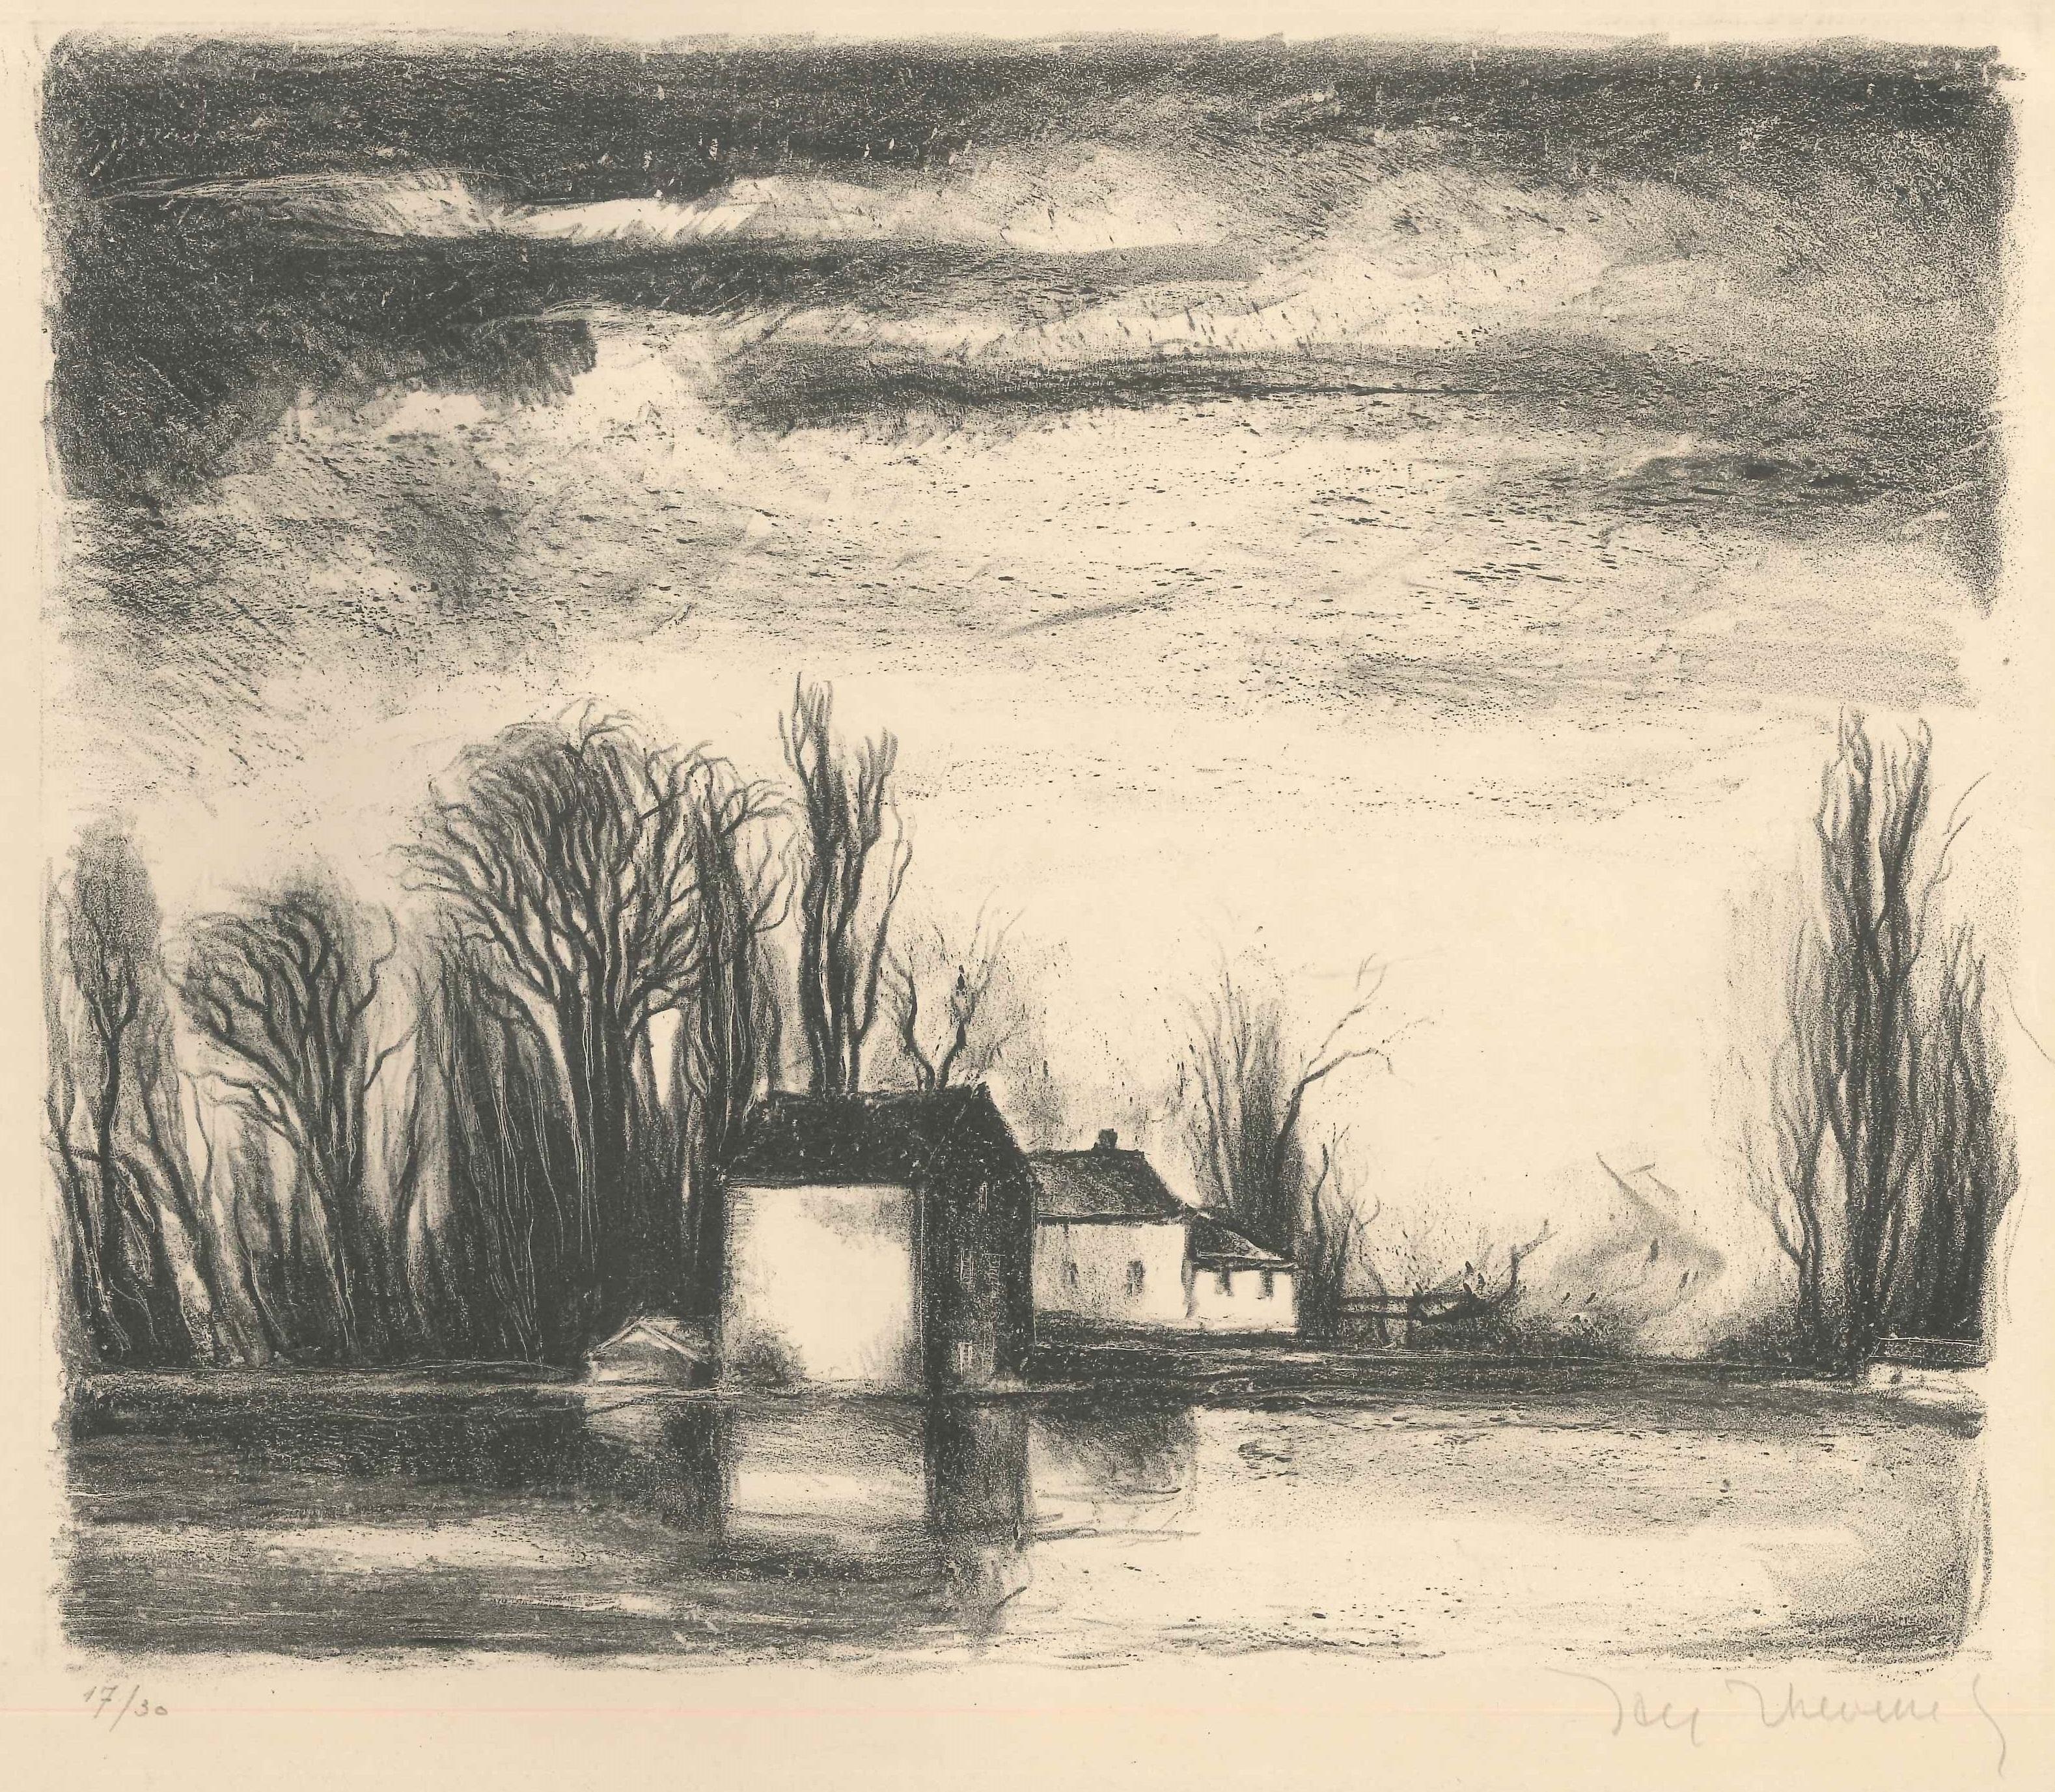 Jacques Thévenet Landscape Print - The House on the Water - Original Lithograph by J. Thévenet - 1950s